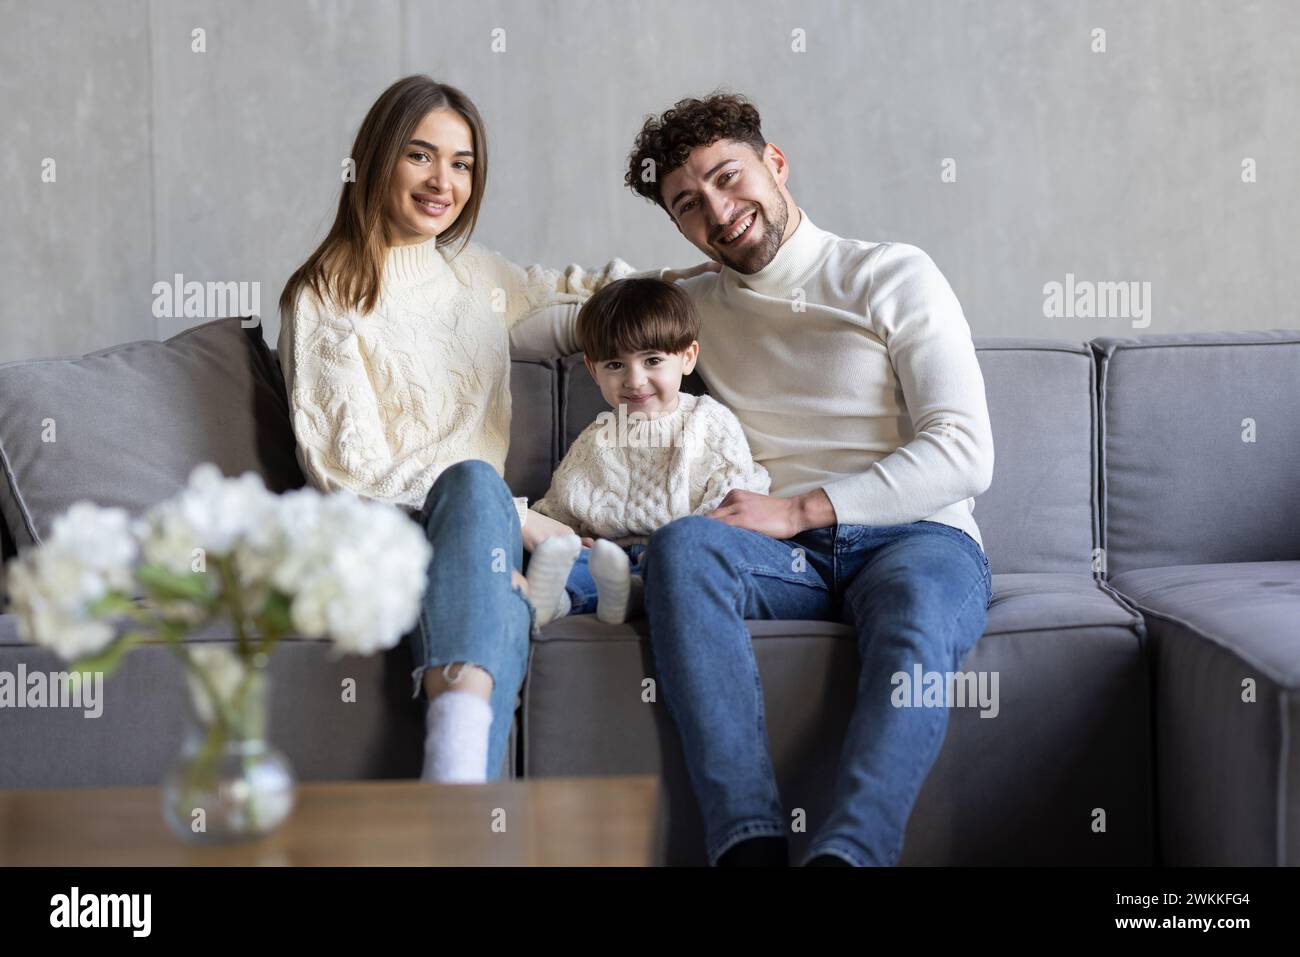 La famille joyeuse passent du temps drôle tout en étant assis sur divan dans une pièce lumineuse. Concept de parentalité heureuse Banque D'Images